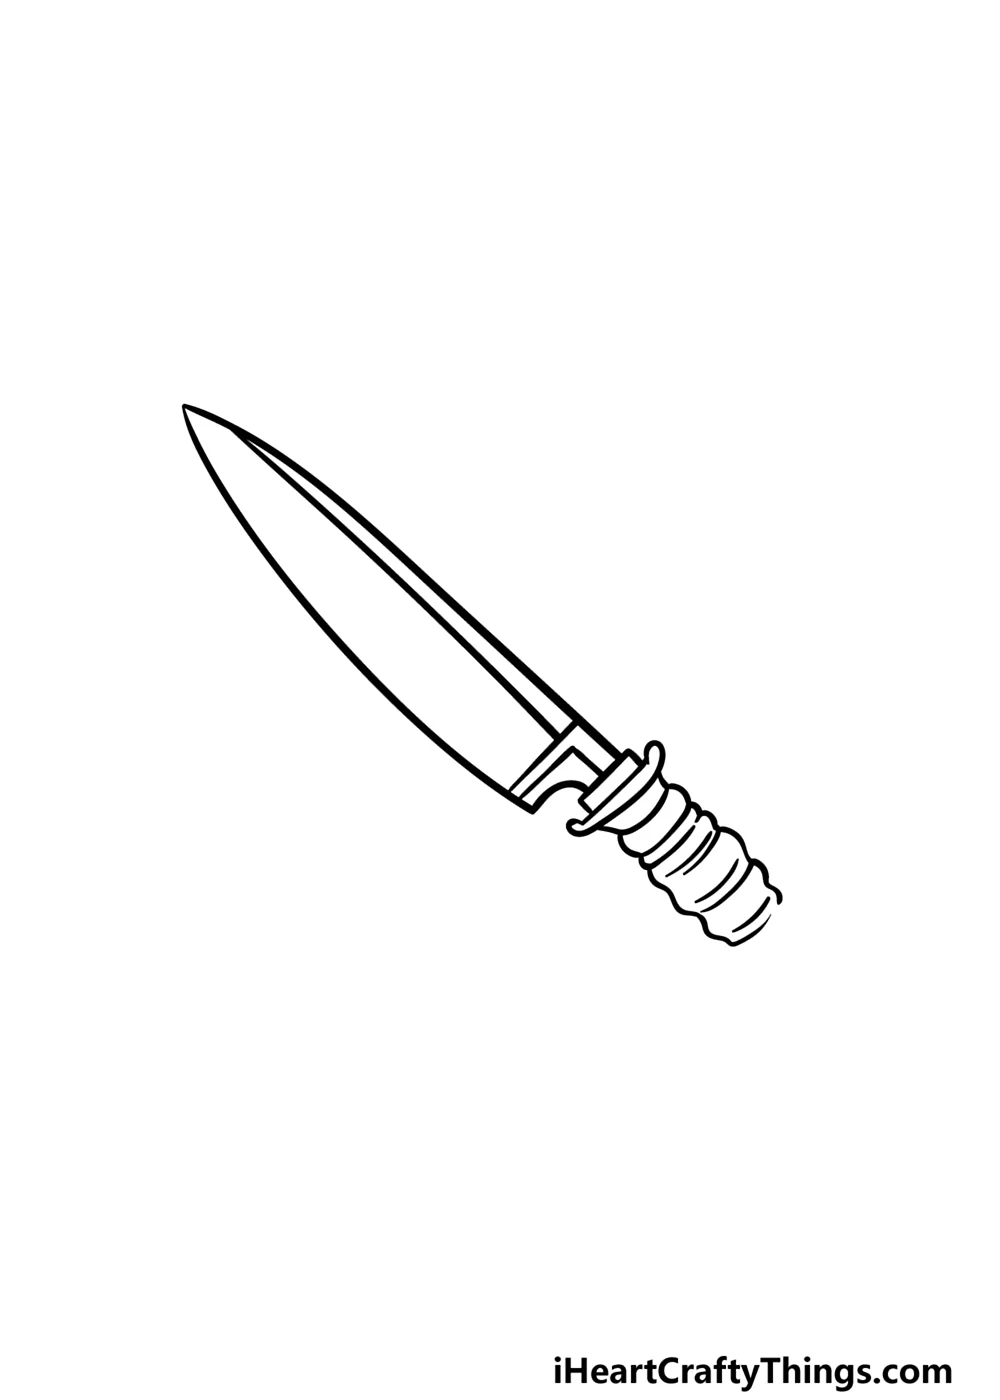 Knife draw